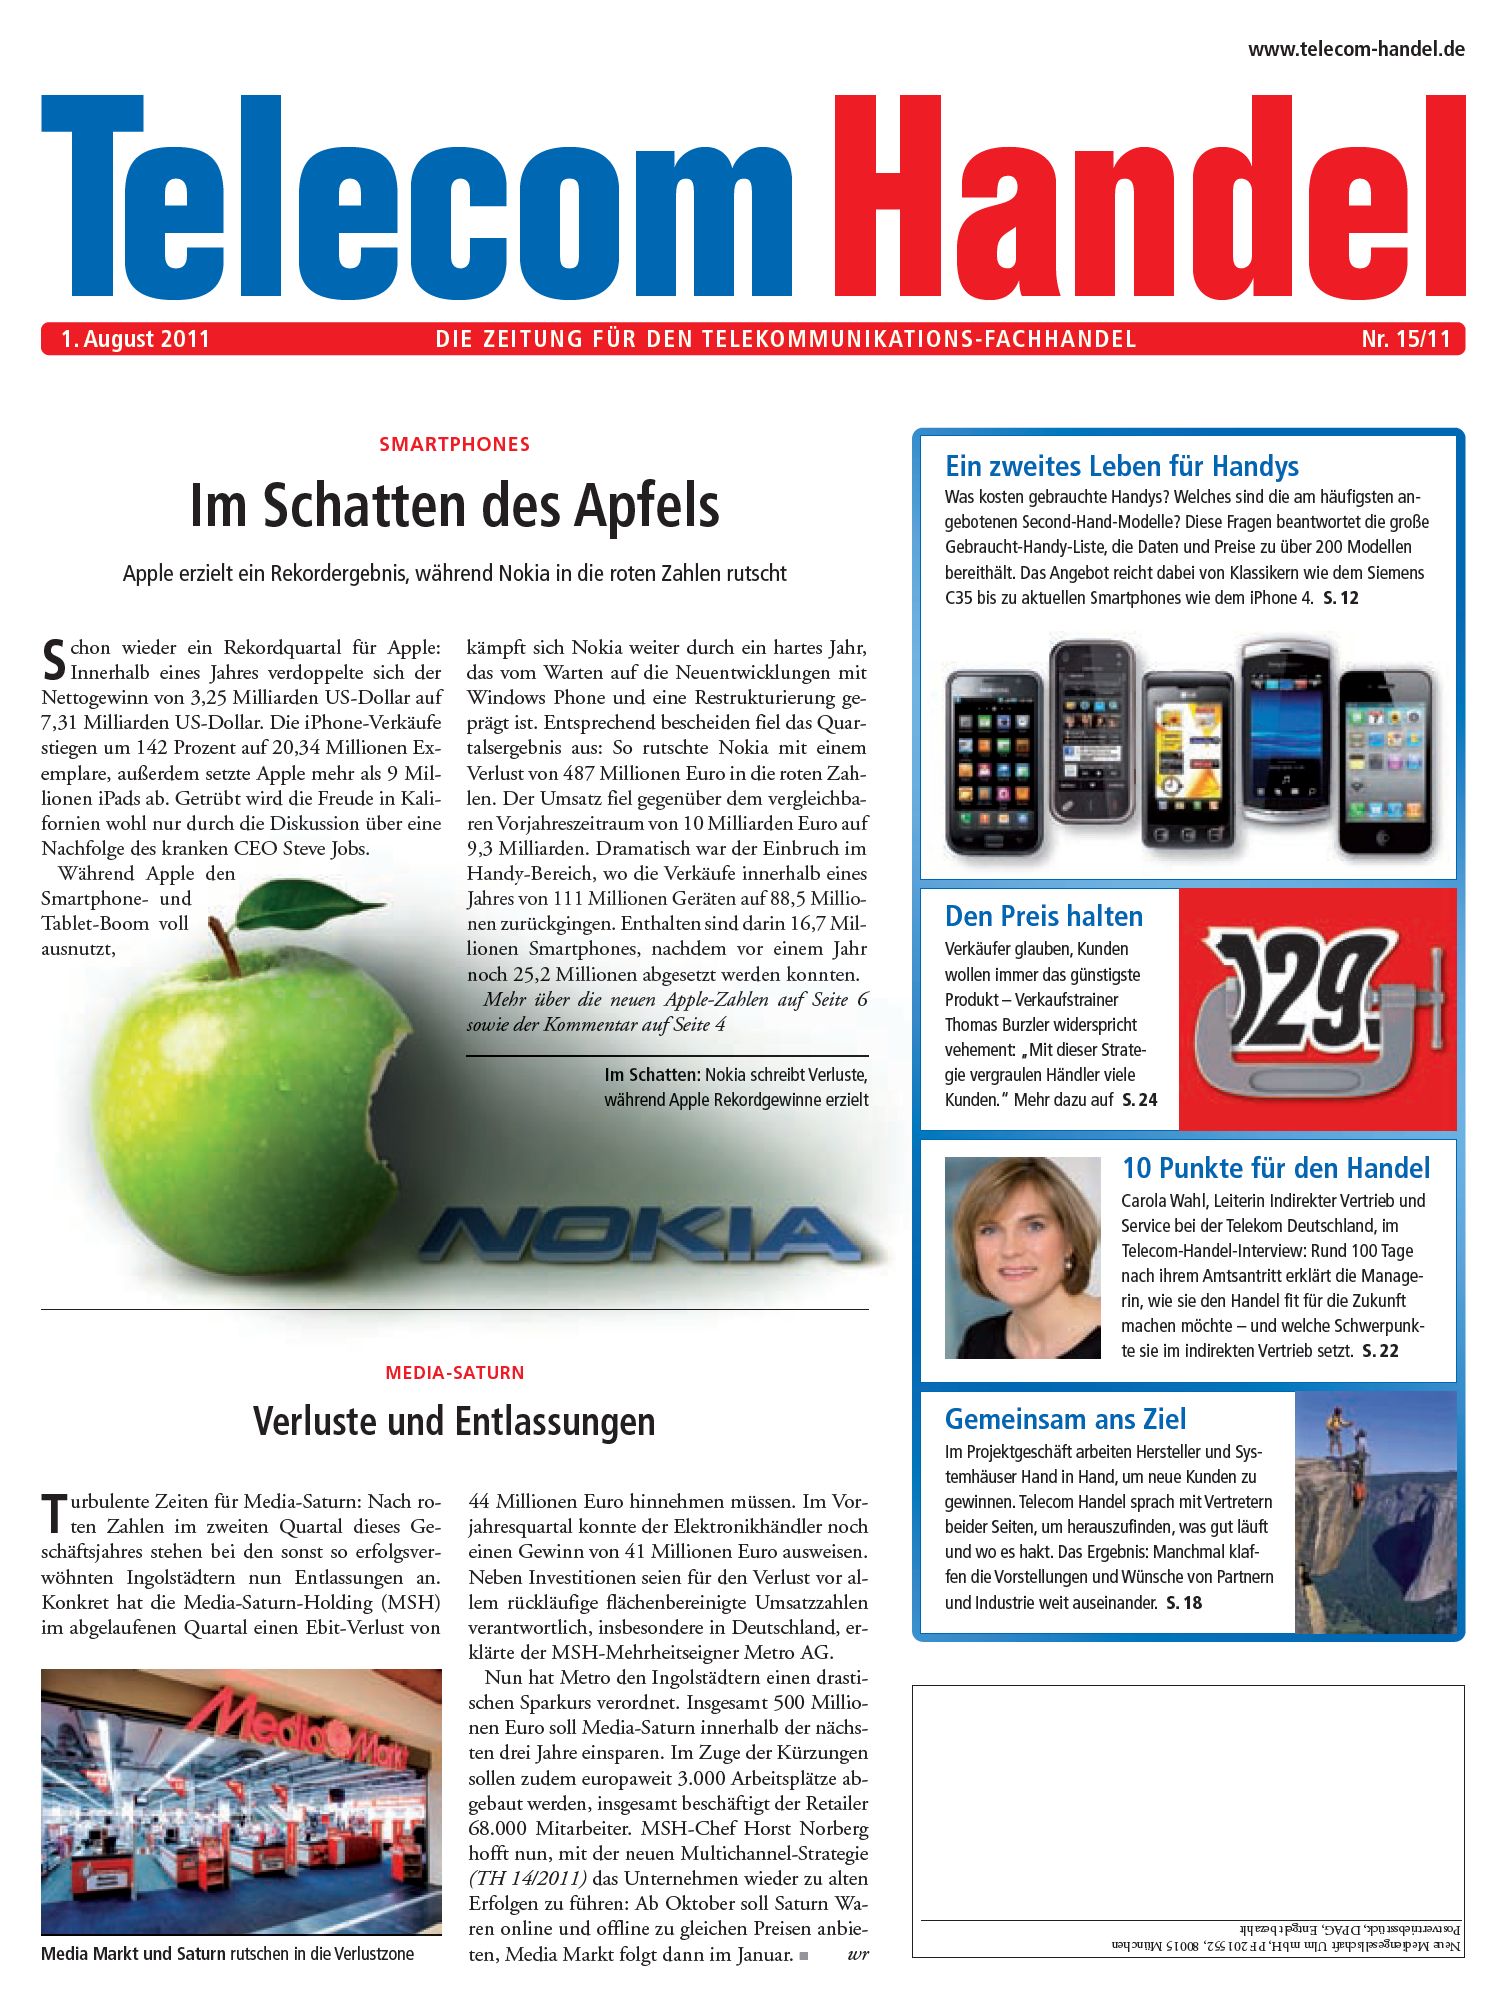 Telecom Handel Ausgabe 15/2011